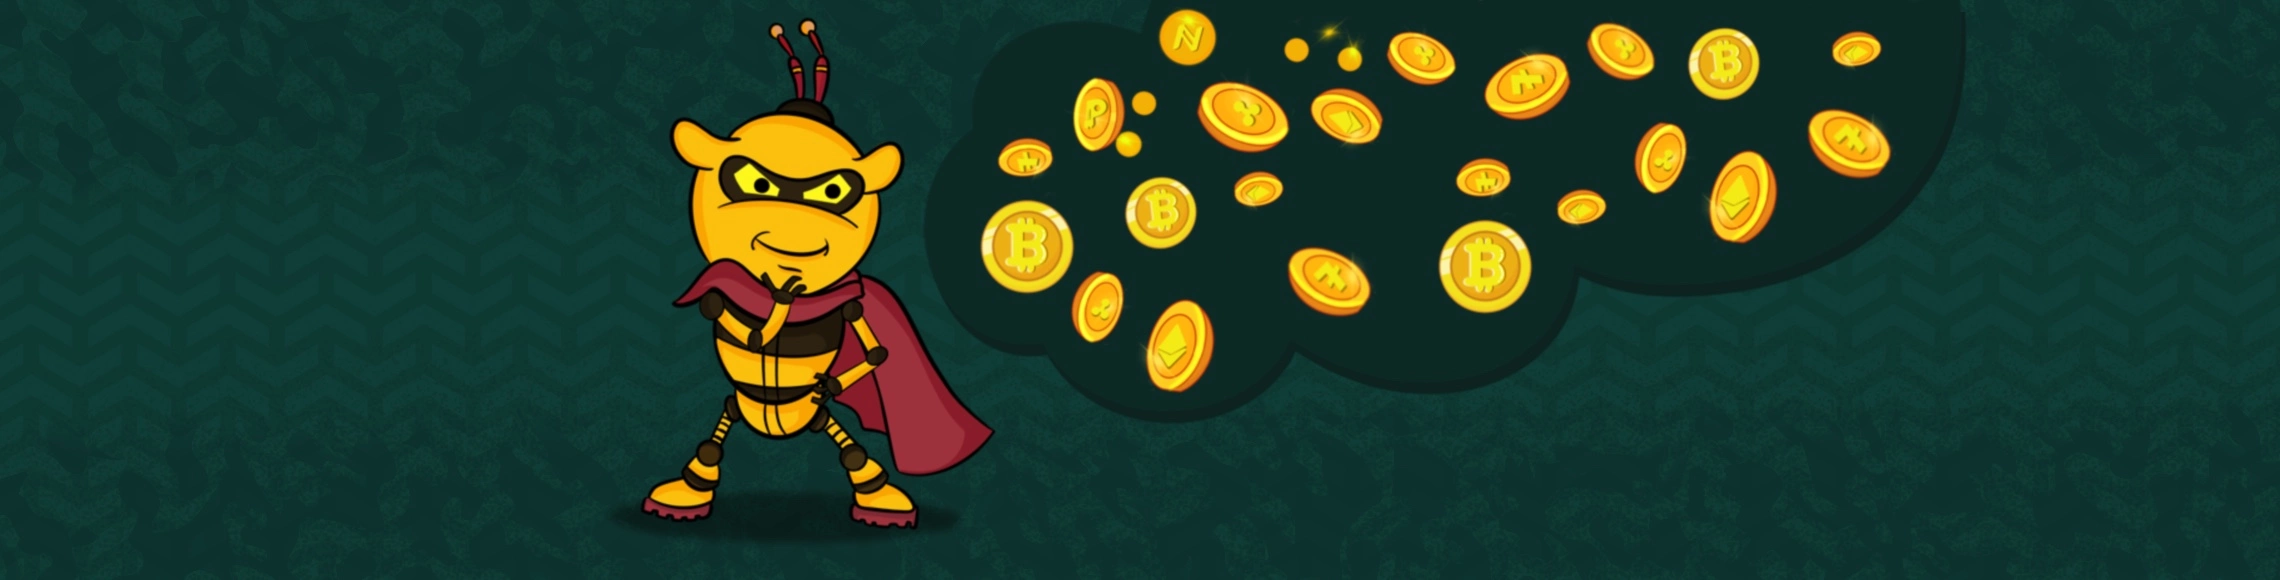 Passen Ihre gambling bitcoin -Ziele zu Ihren Praktiken?